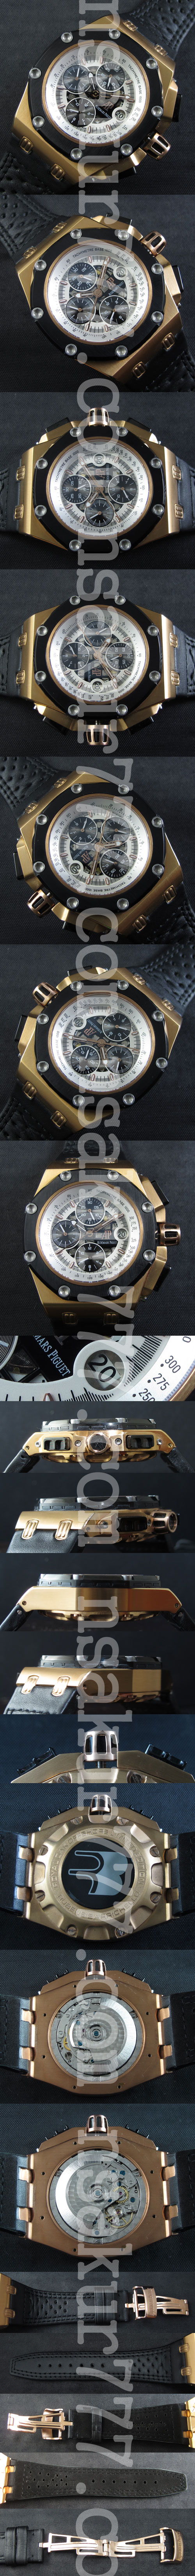 販売促進中 AUDEMARS PIGUET コピー時計 ロイヤルオーク オフショア クロノクラフ Asian 7750搭載 デイト表示